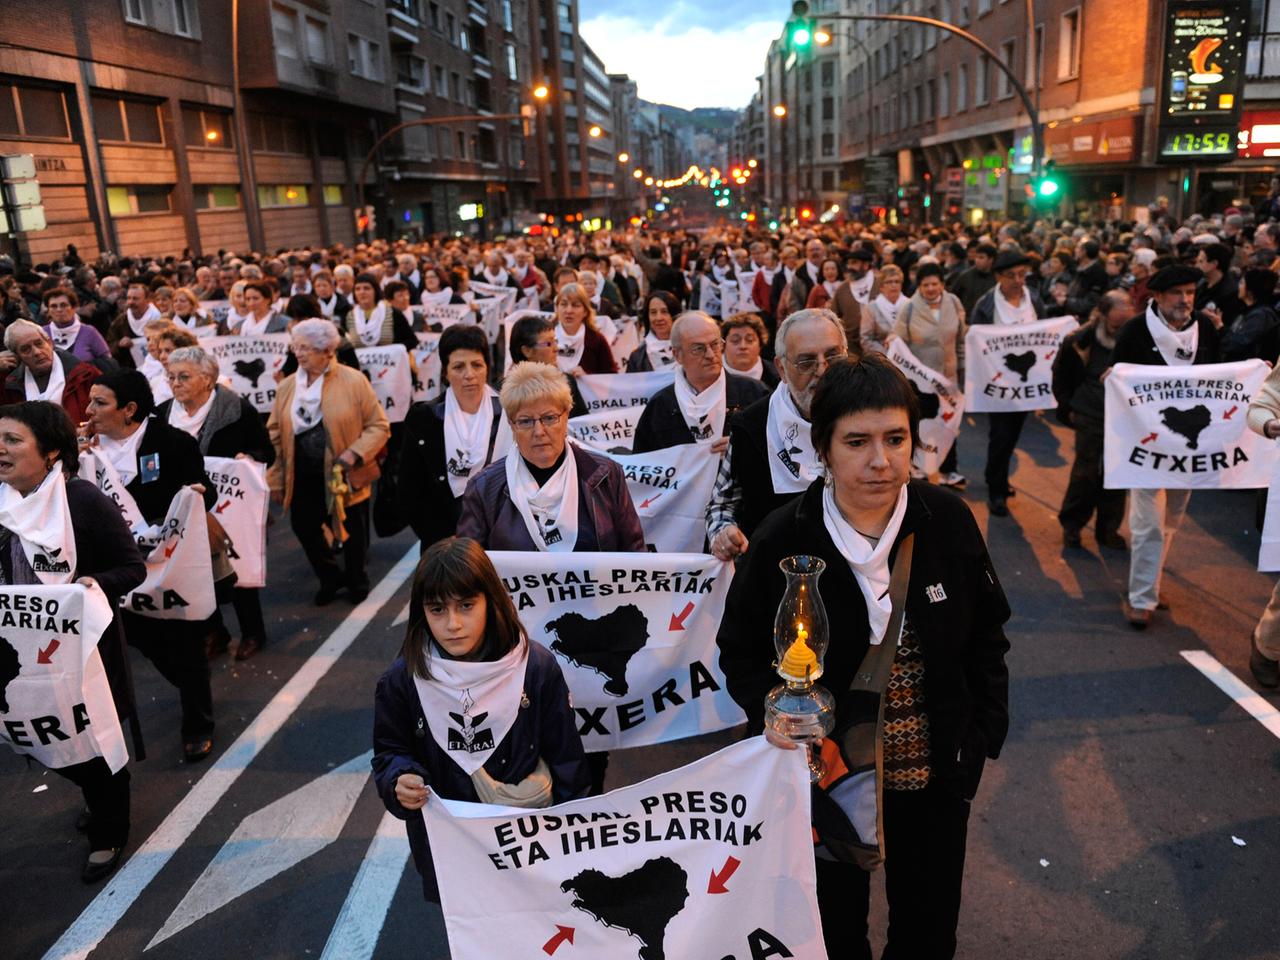 Demonstranten im Dunkeln auf einer Straße, die weiße Banner und Kerzen halten, auf den Bannern ist in baskisch zu lesen: "Mit allen Rechten. Baskische Häftlinge zurück ins Baskenland."